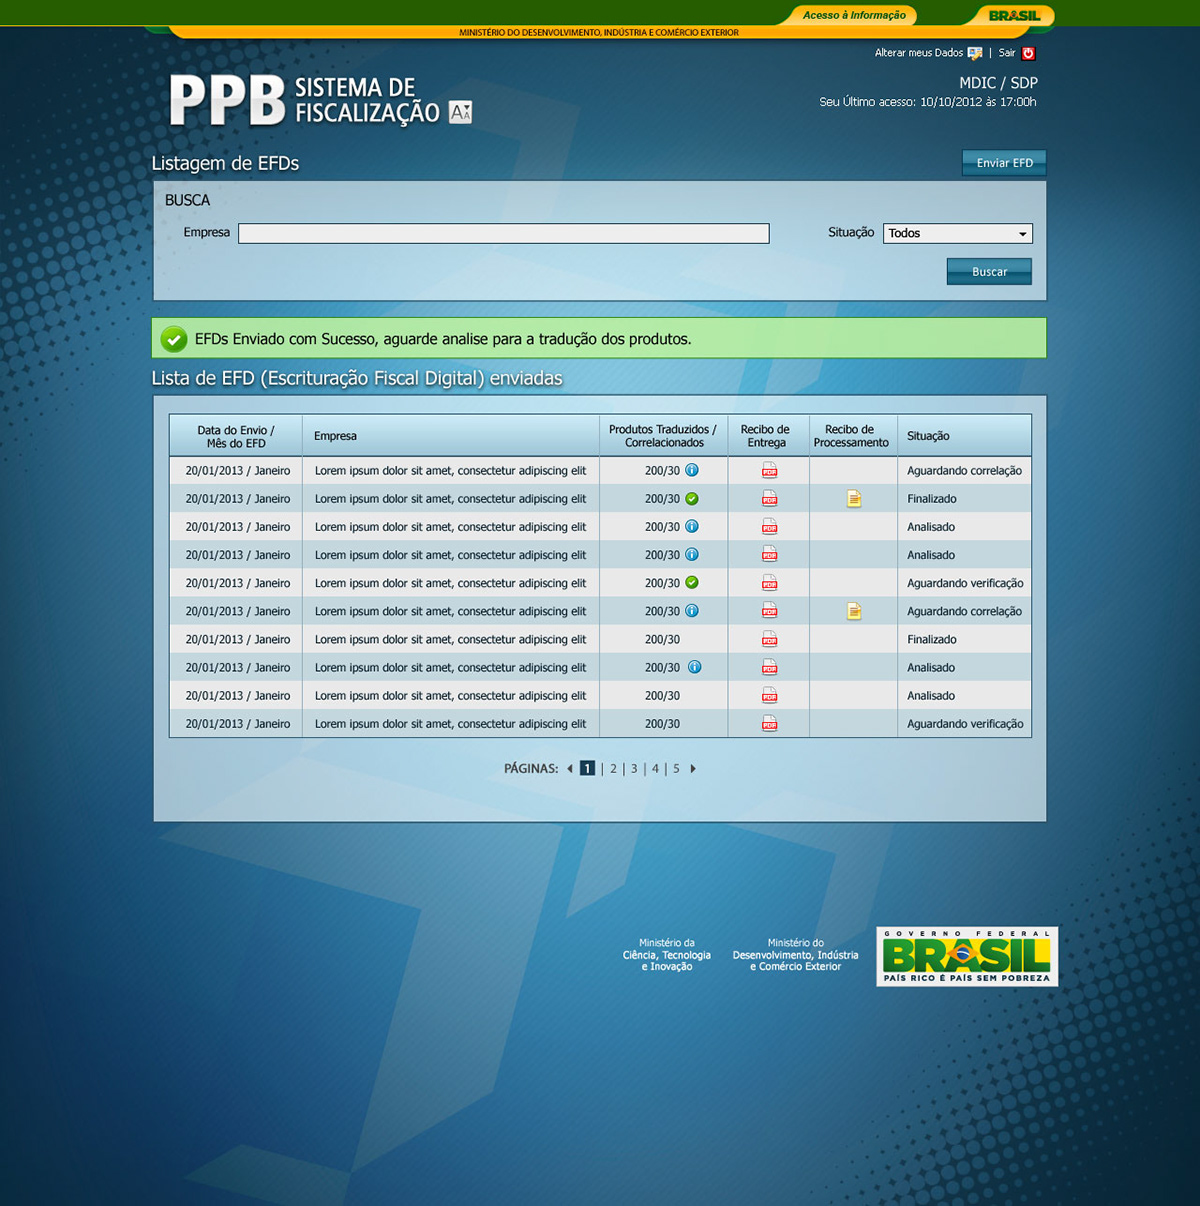 Governo Government Brazil brasilia Distrito Federal site sitio beualtiful system sistema Webdesign design